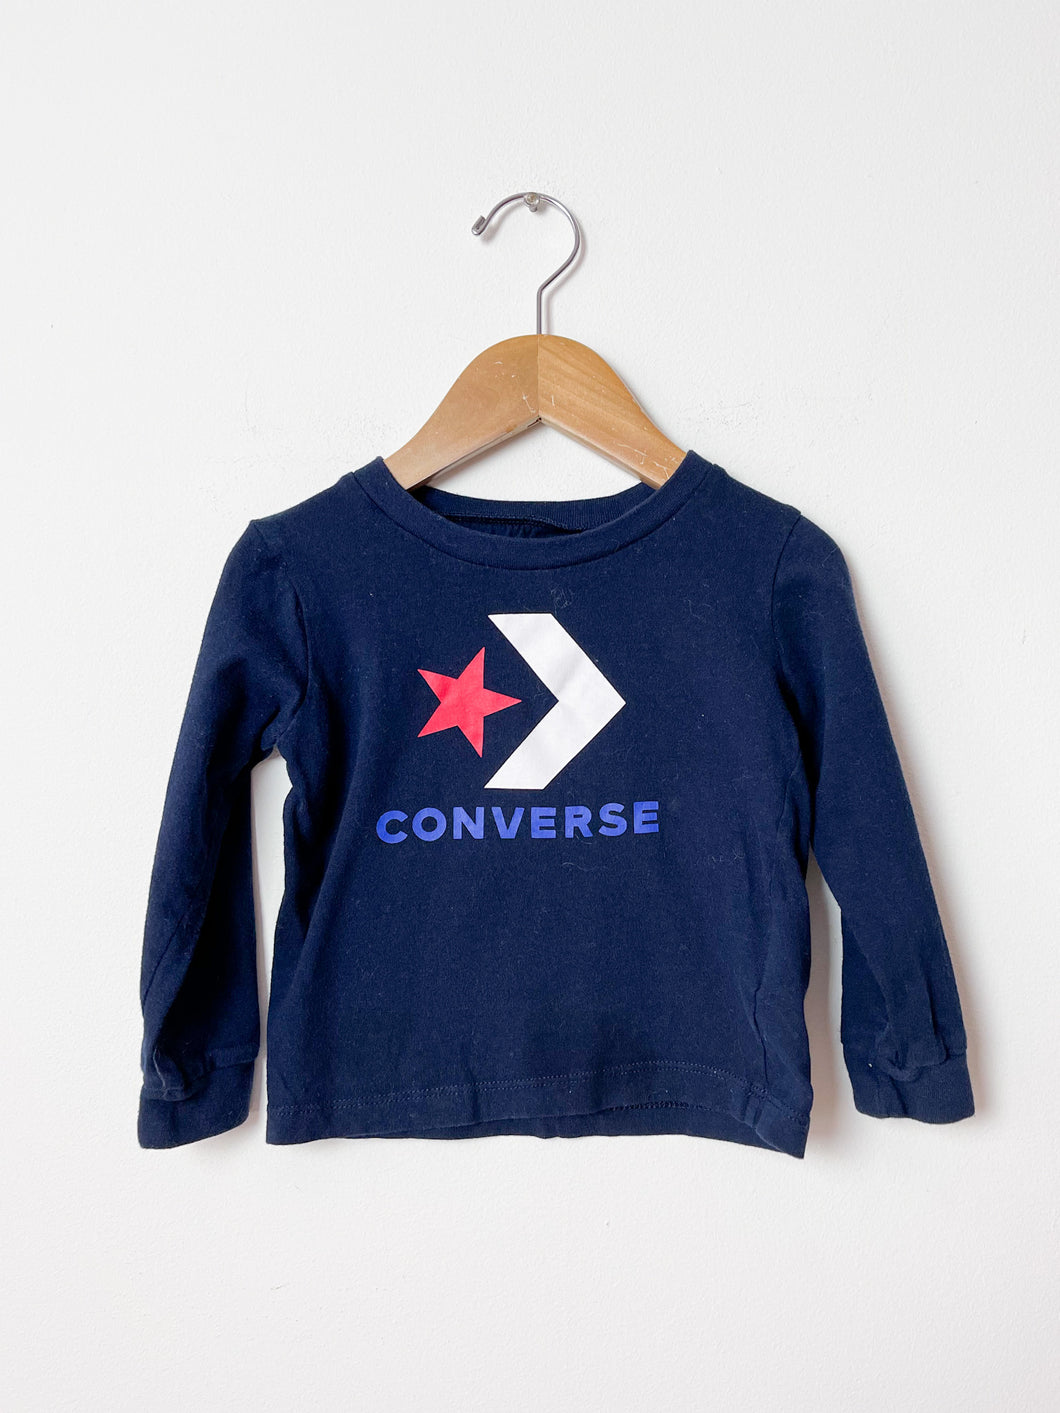 Blue Converse Shirt Size 24 Months